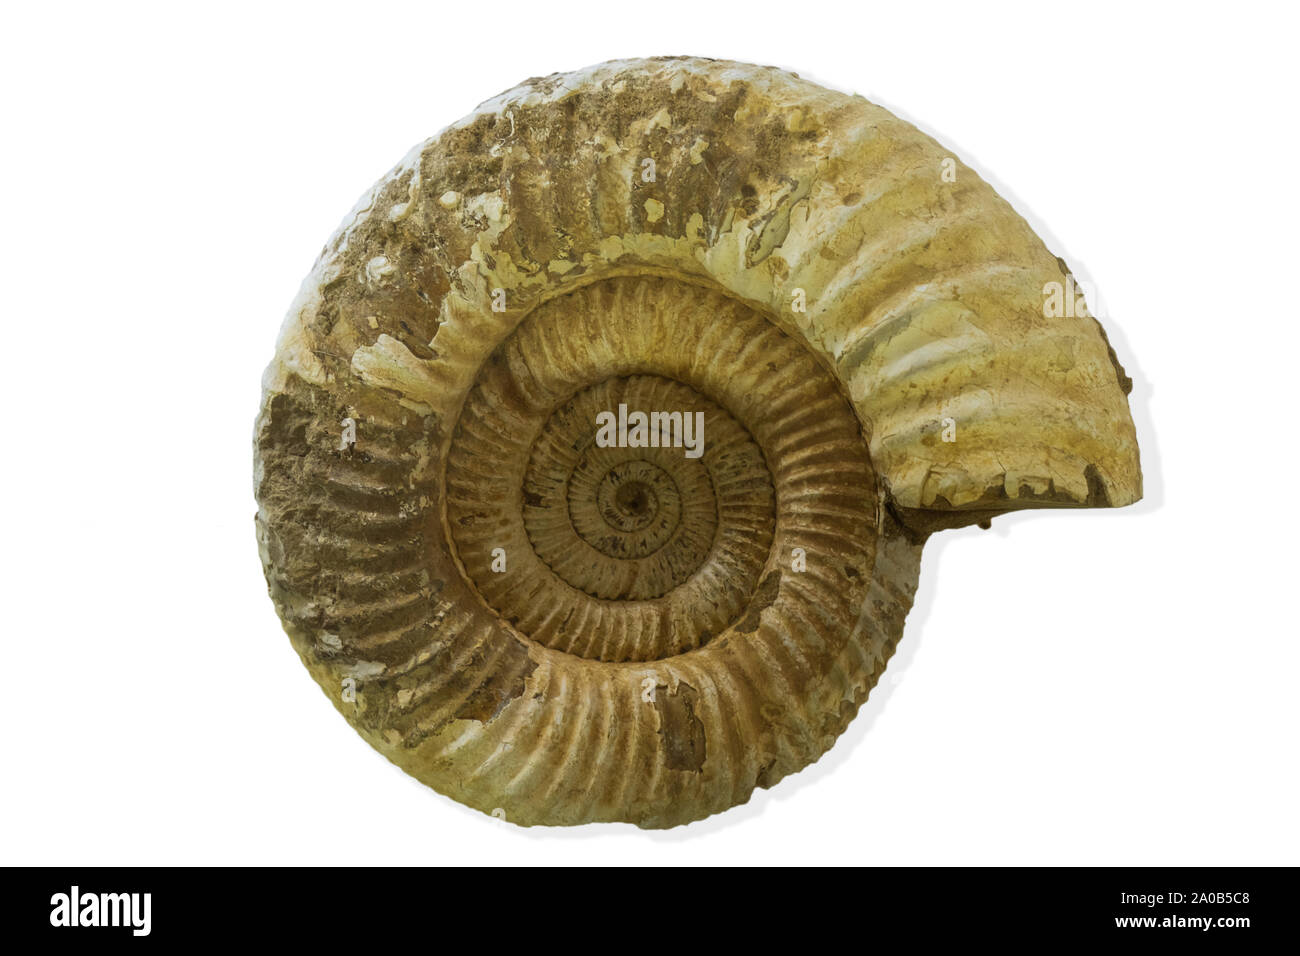 Ammonite fossile de l'ère des dinosaures isolé sur fond blanc Banque D'Images